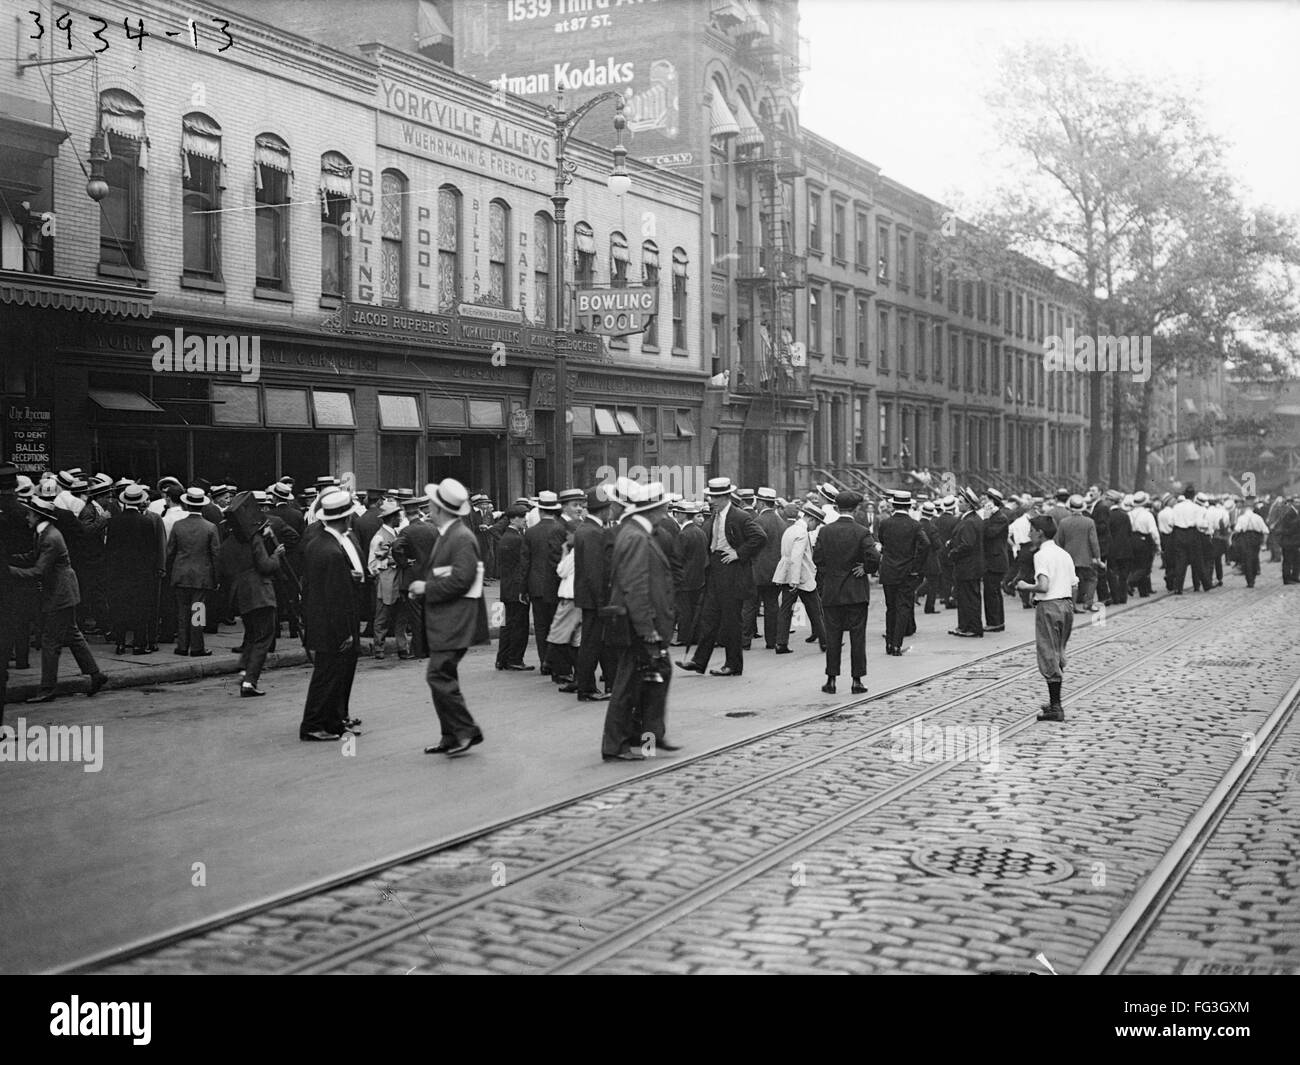 Grève de tramways, c1915. NStriking /travailleurs tramway /nin La ville de New York. Photographie, c1915. Banque D'Images